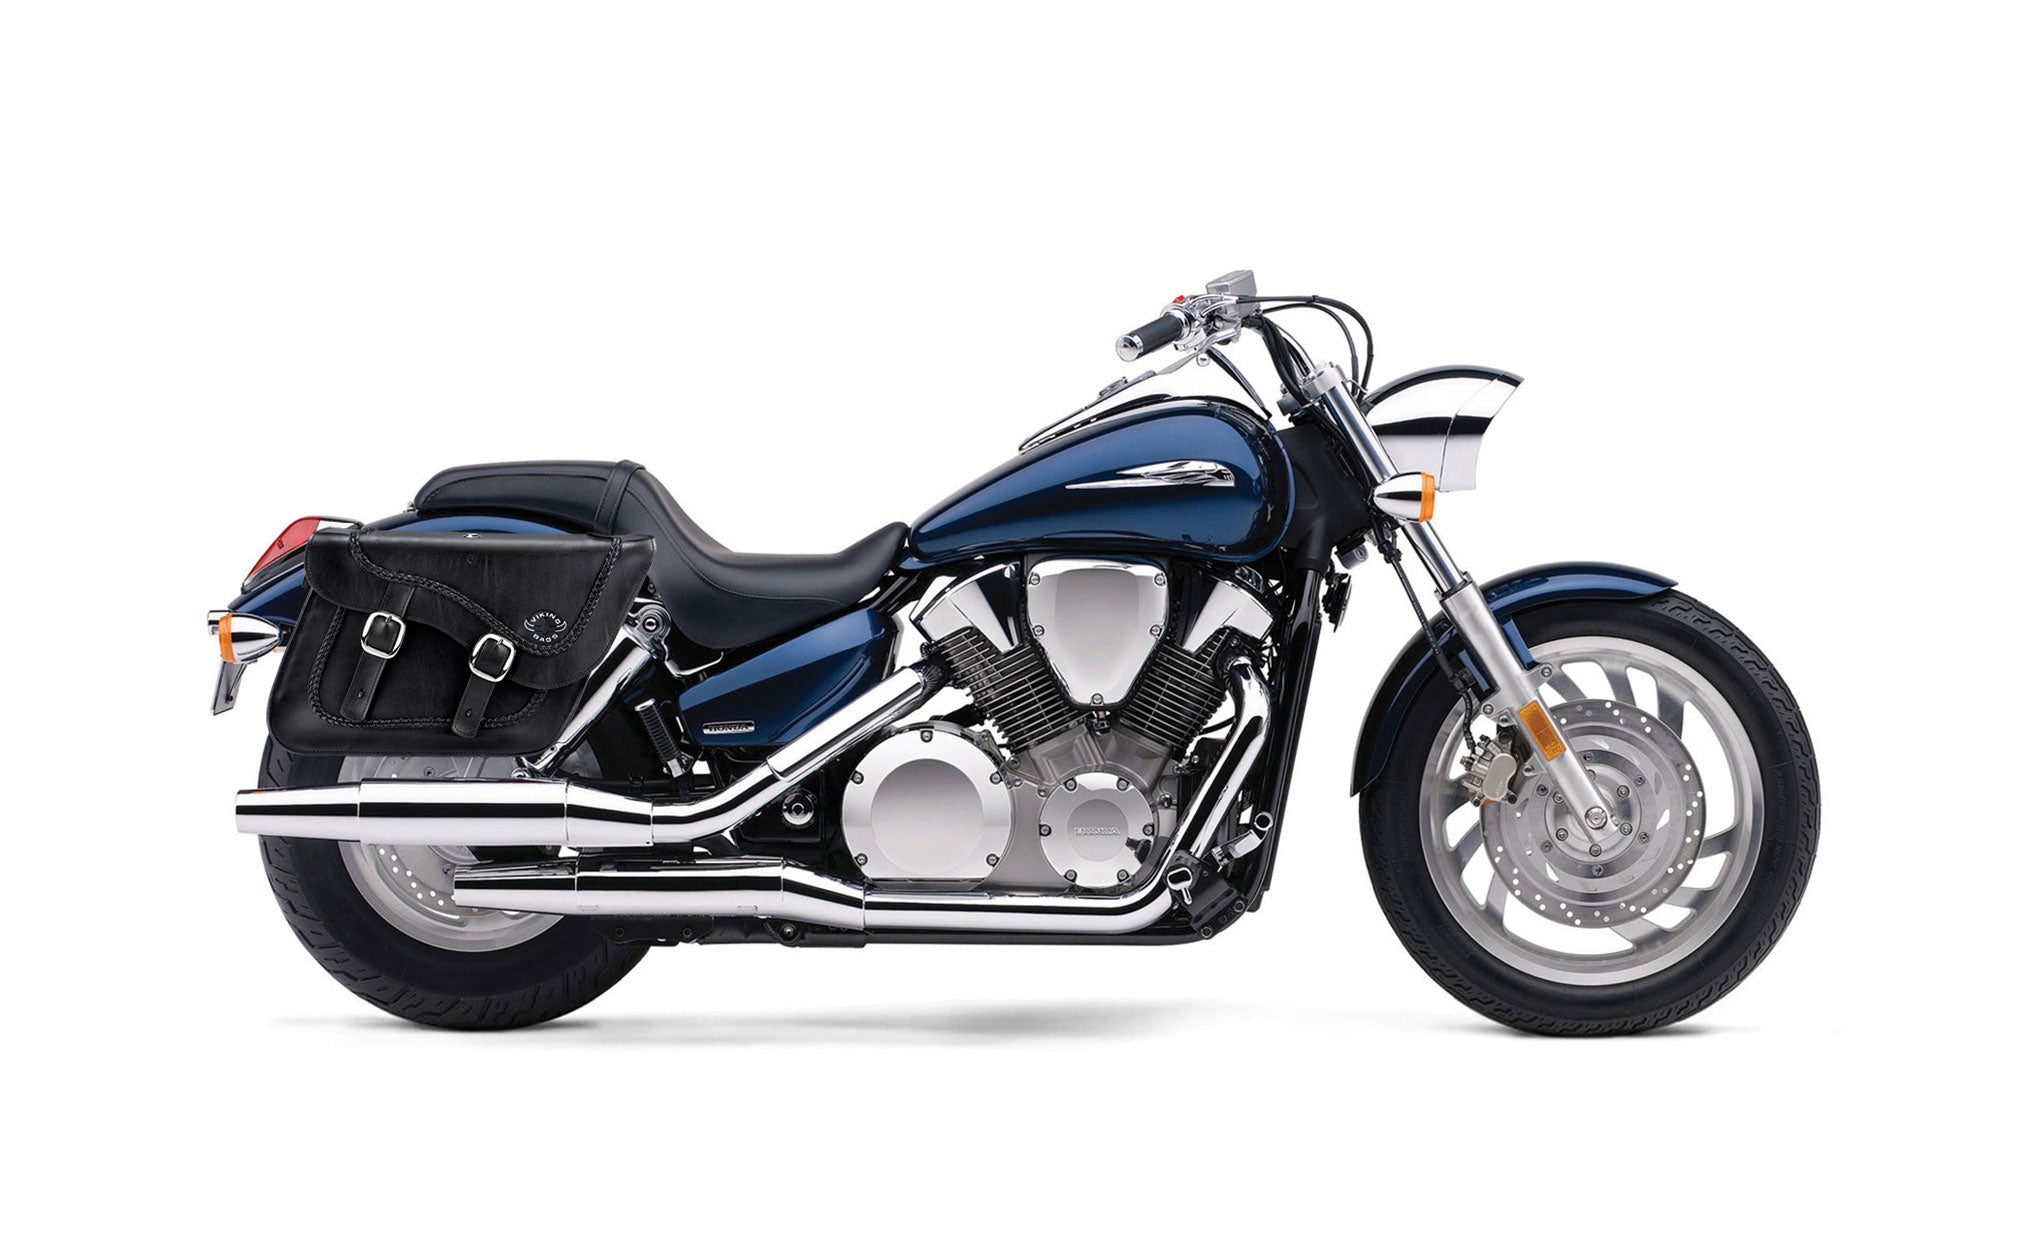 Viking Americano Honda Vtx 1300 C Braided Large Leather Motorcycle Saddlebags on Bike Photo @expand